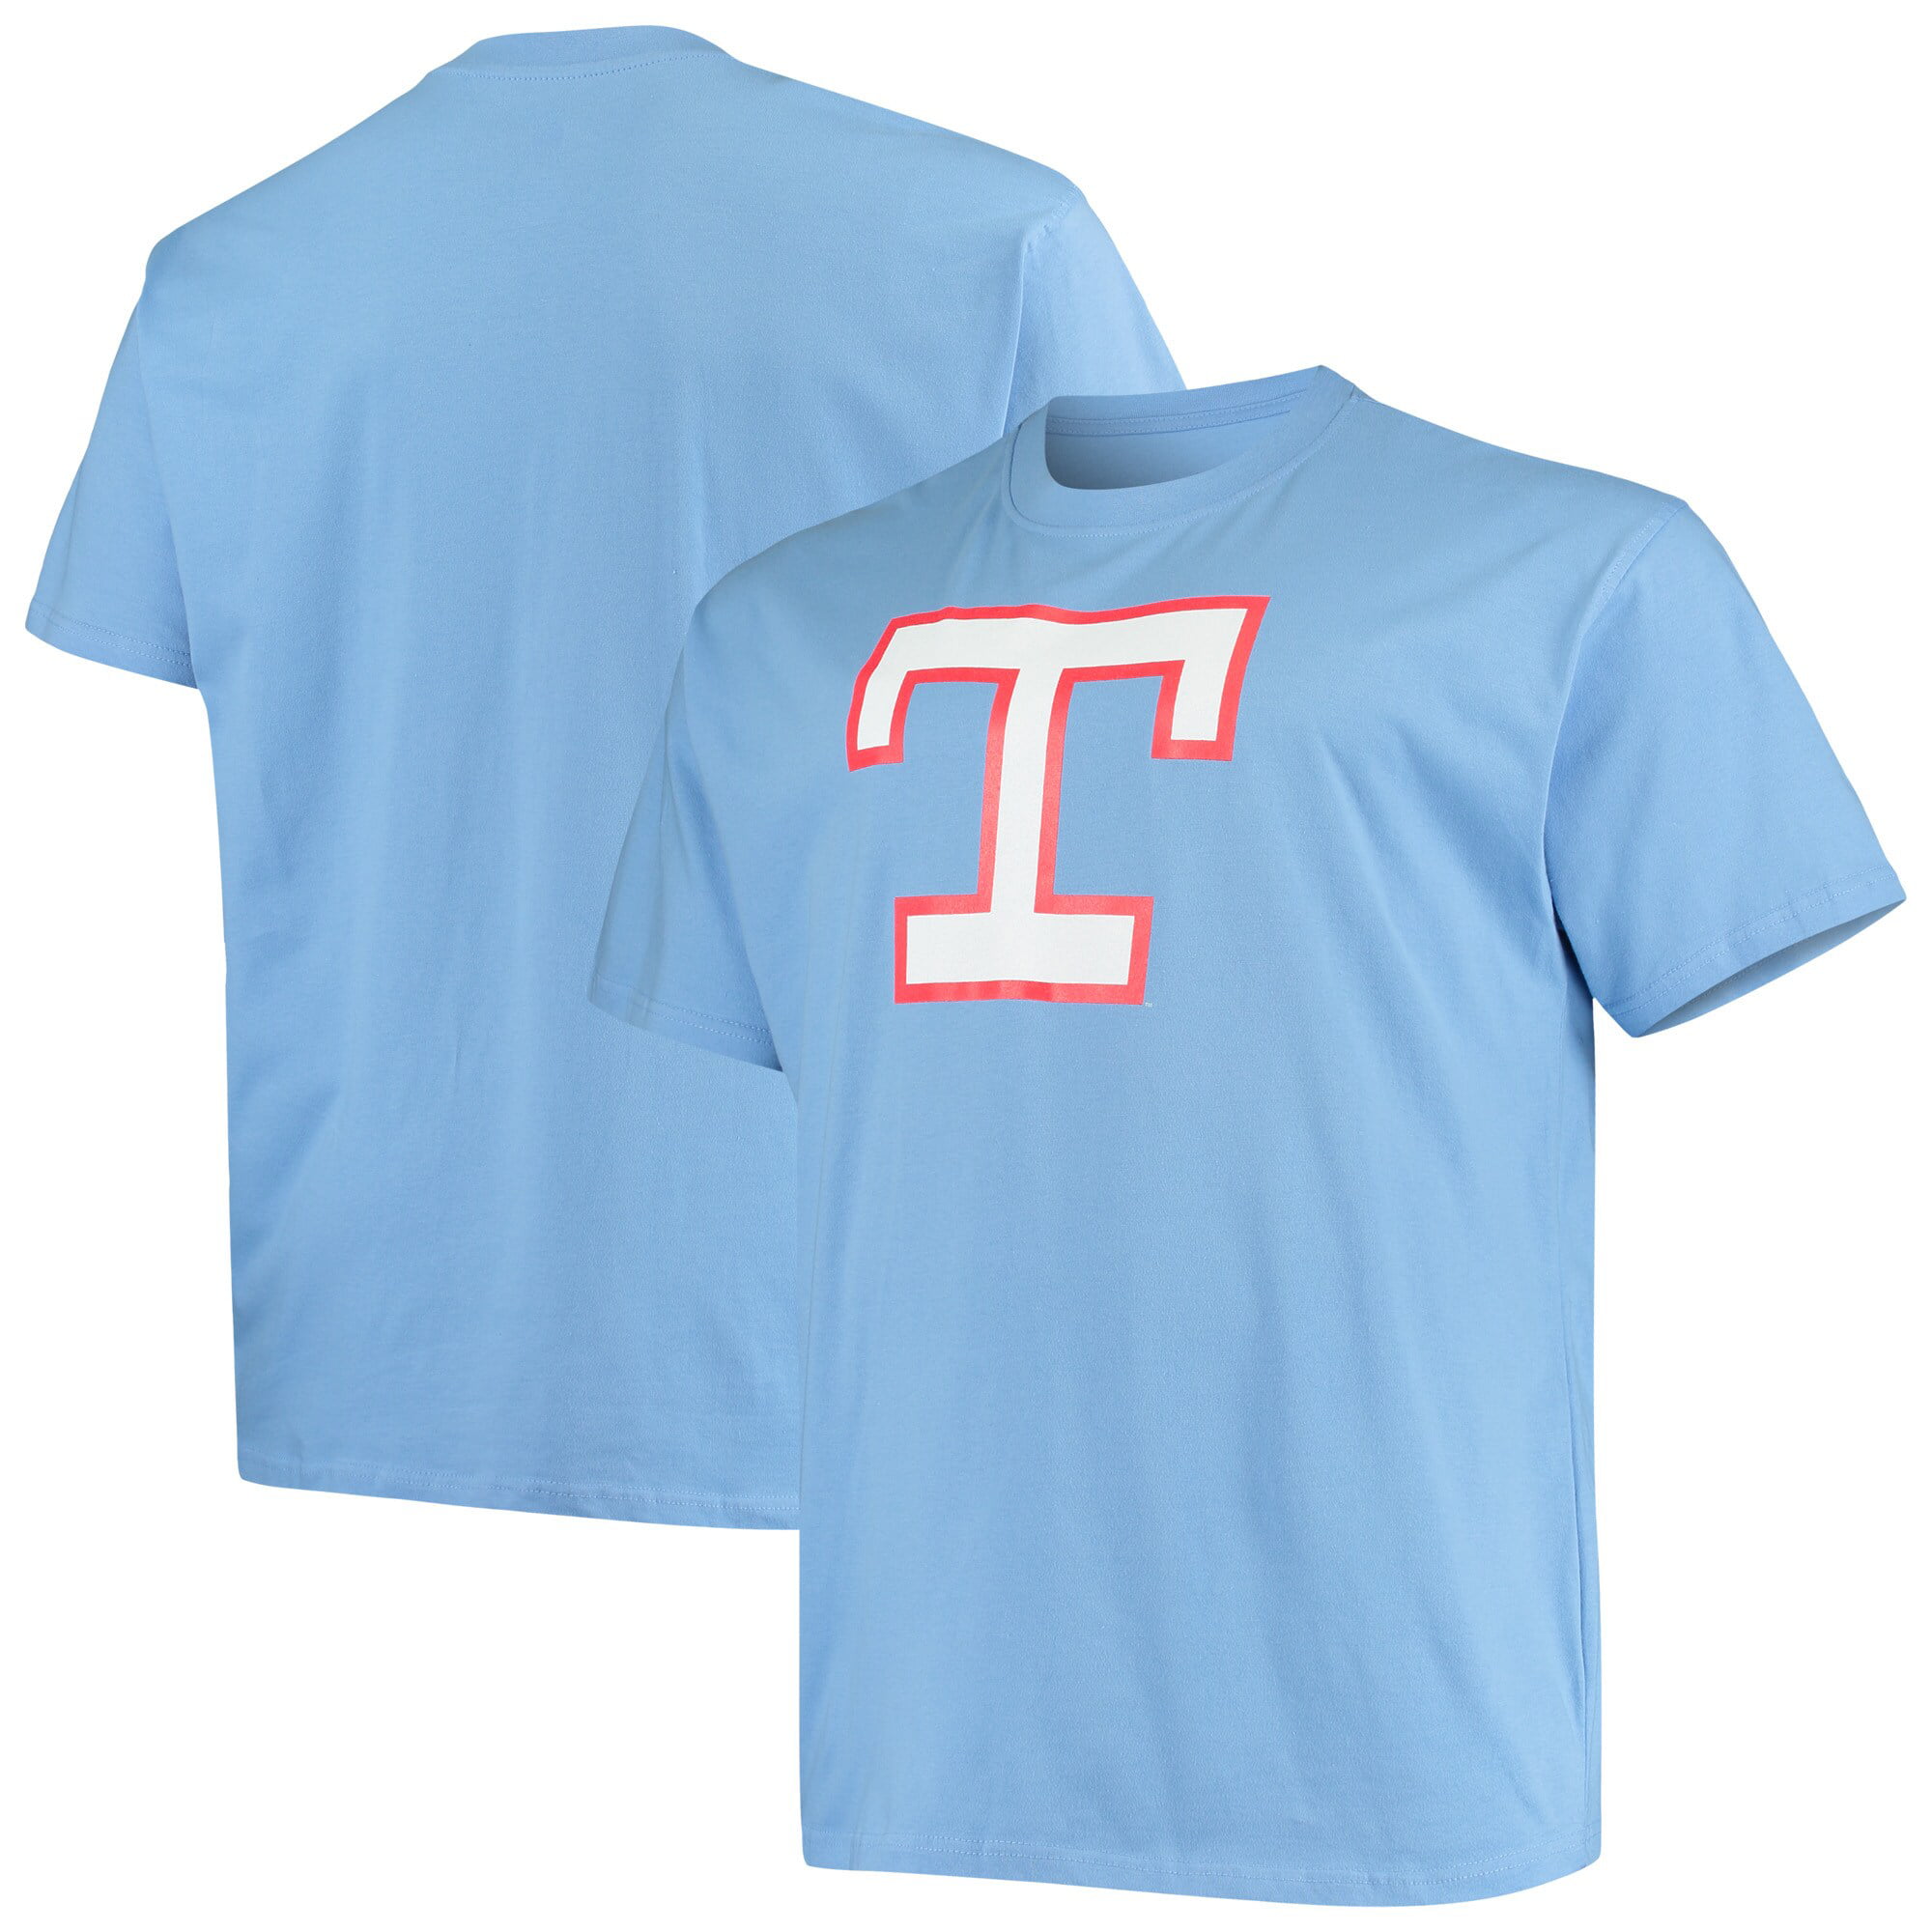 texas rangers light blue shirt